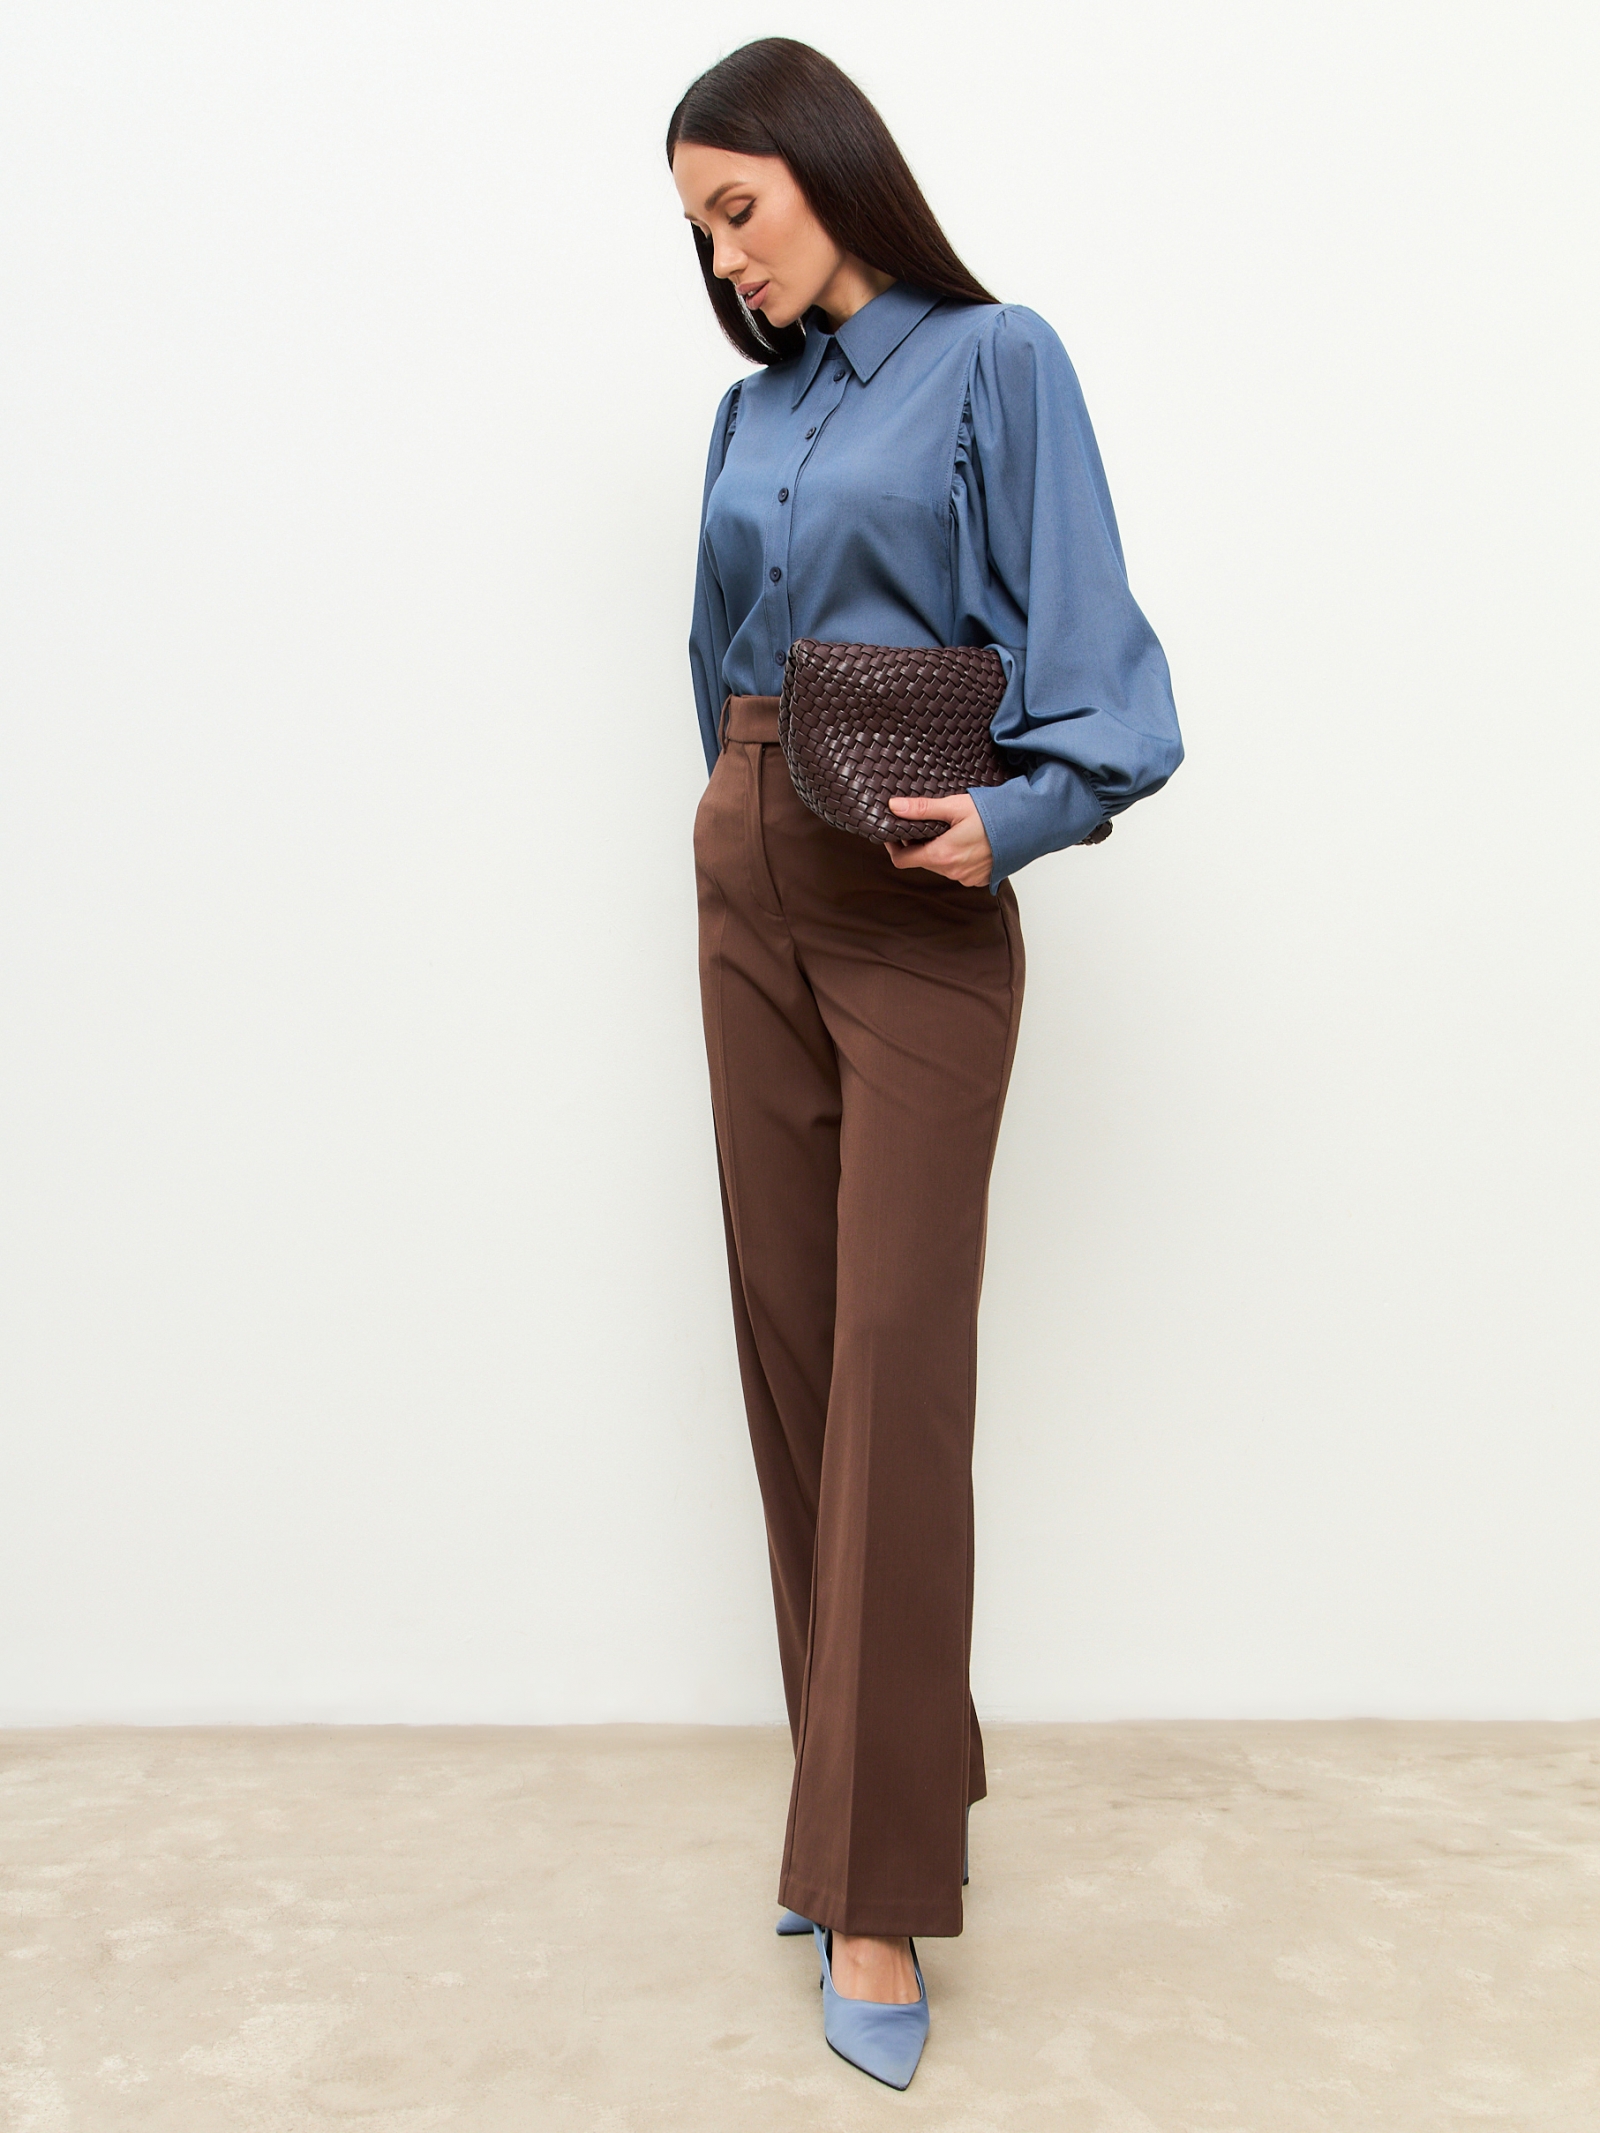 Блузка с объемным рукавом из тонкой джинсы OD-864-2 темно-синий